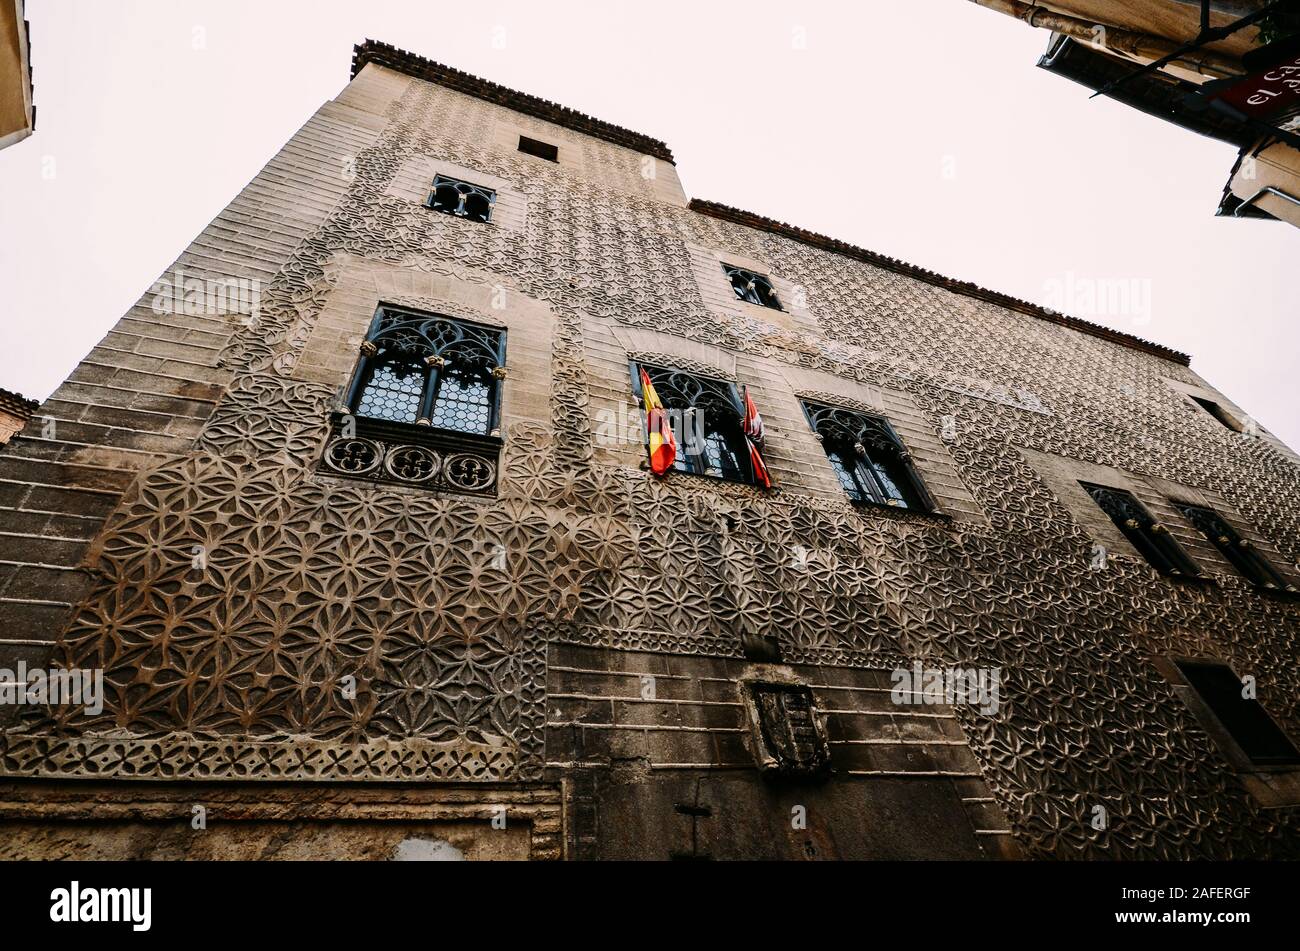 Segovia, Spagna - 8 Dicembre 2019: vecchi edifici di Segovia, Spagna decorata con pattern unici Foto Stock